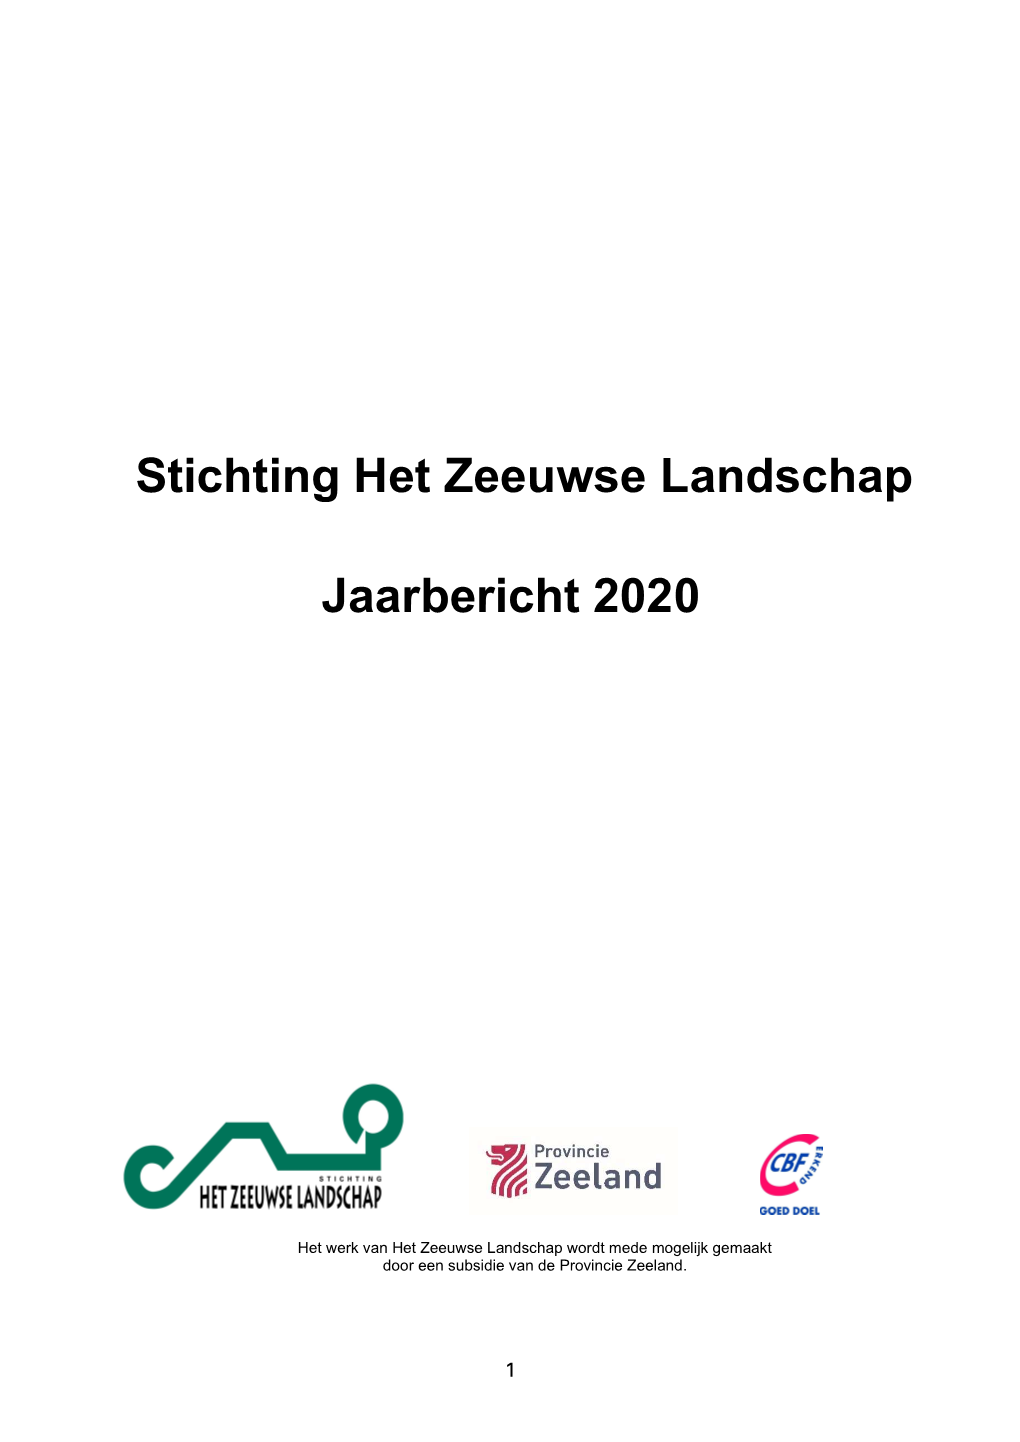 Jaarverslag 2020 Van Stichting Het Zeeuwse Landschap